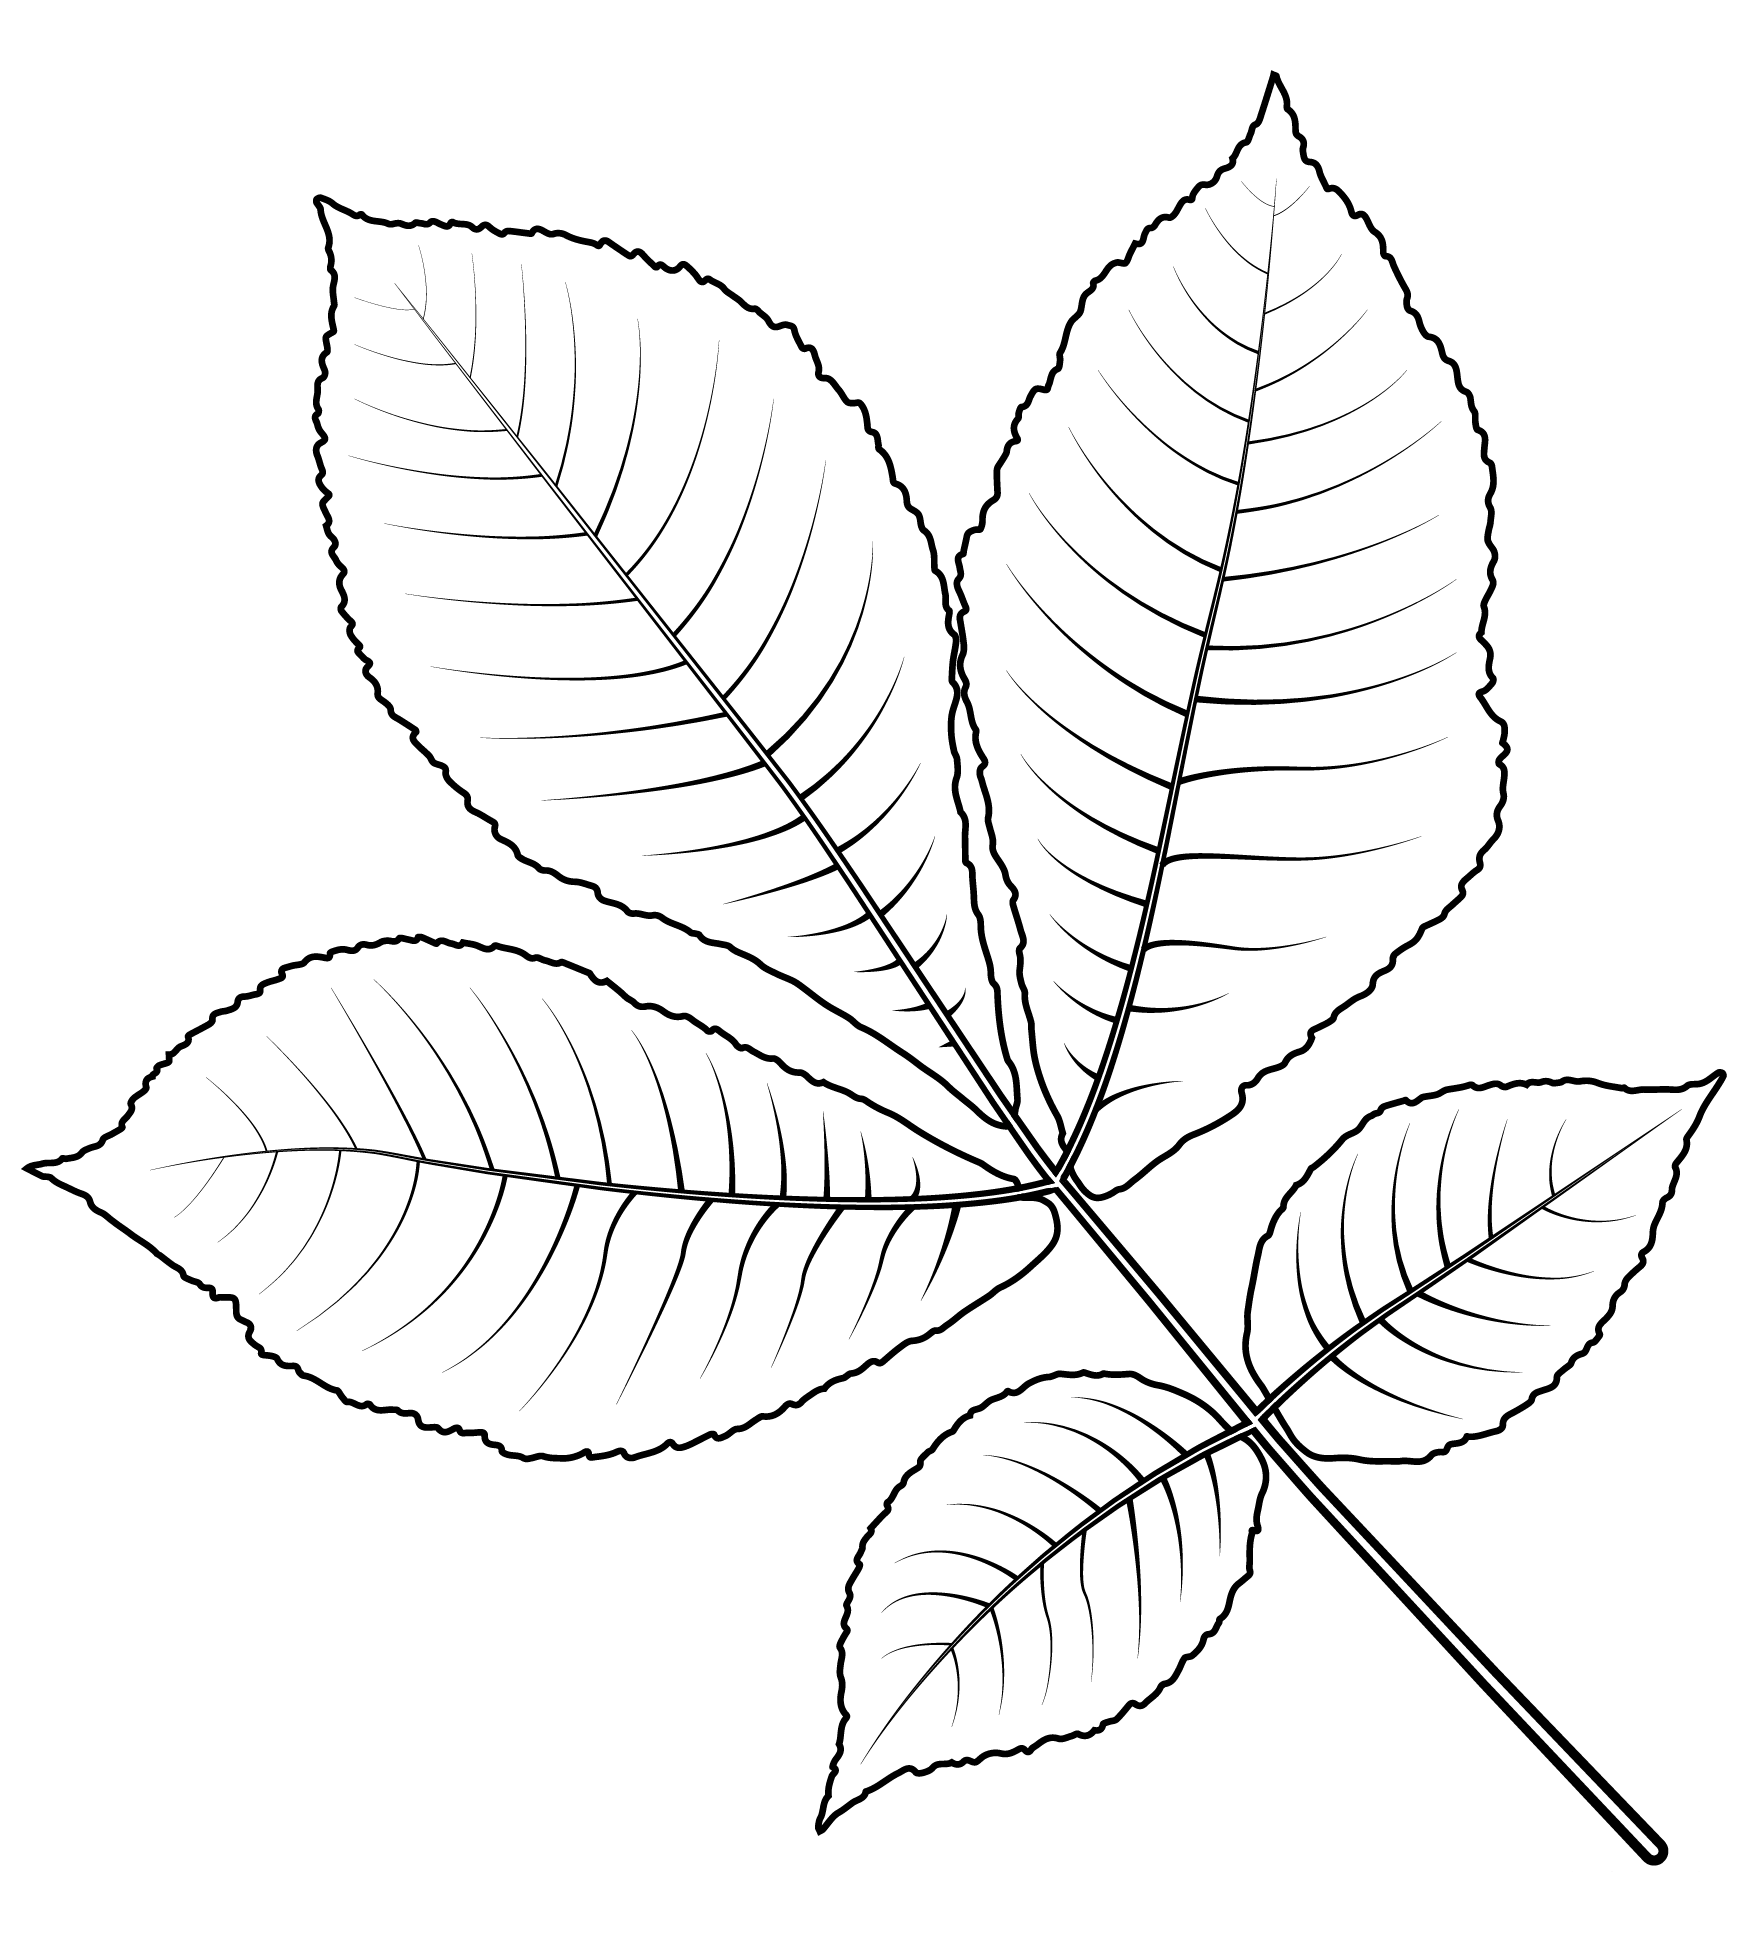 Shagbark Hickory Tree Leaf